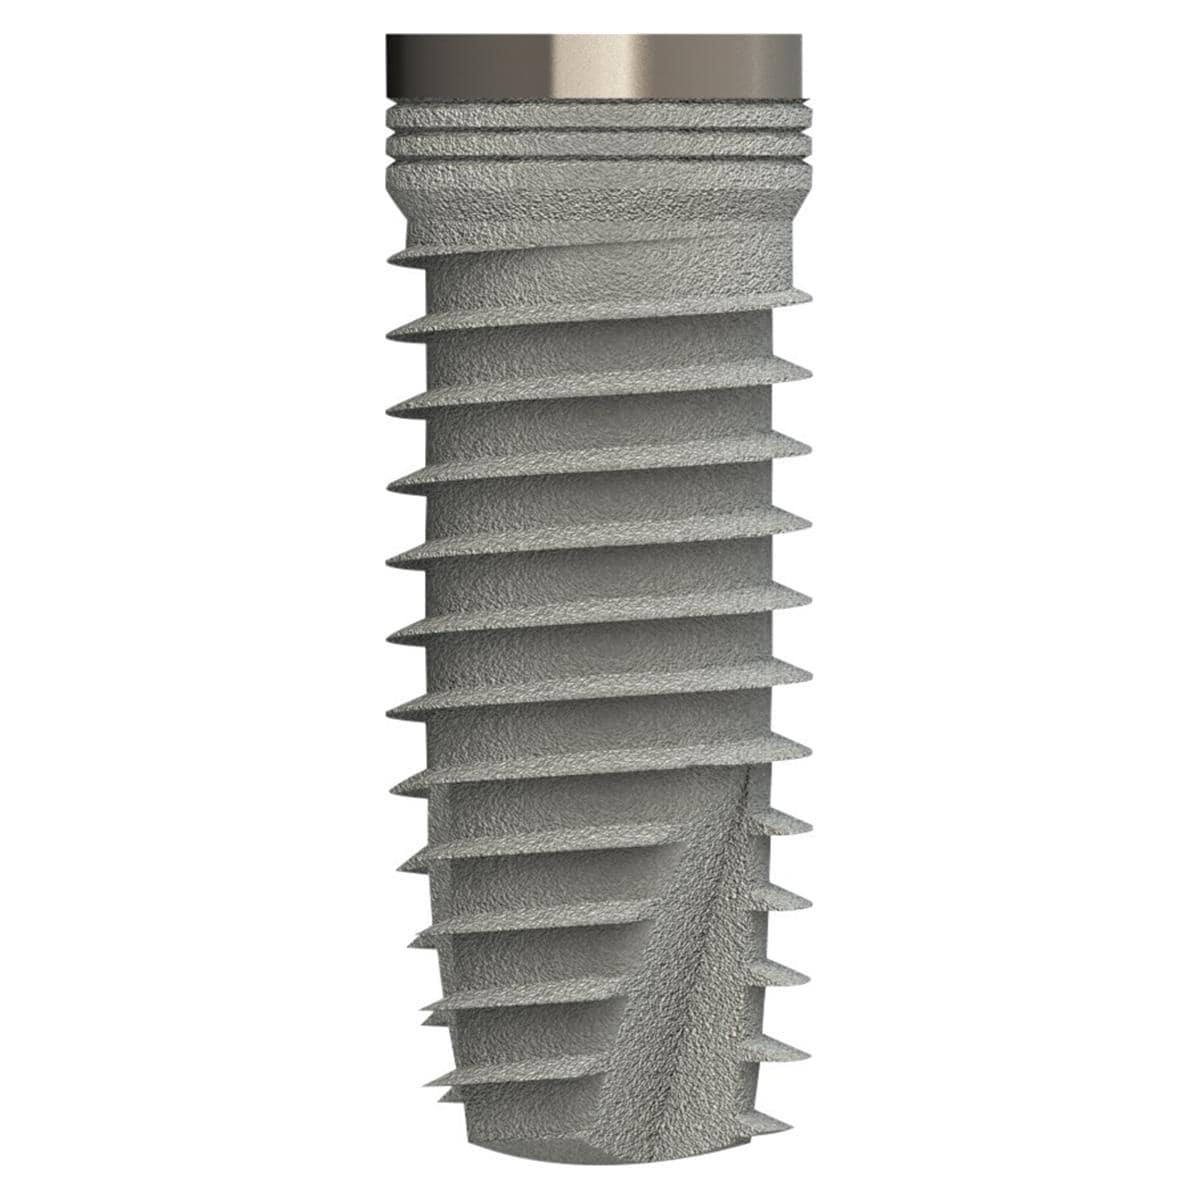 TL Implantat BONITex® P Ø 4,3 mm - Länge 12 mm